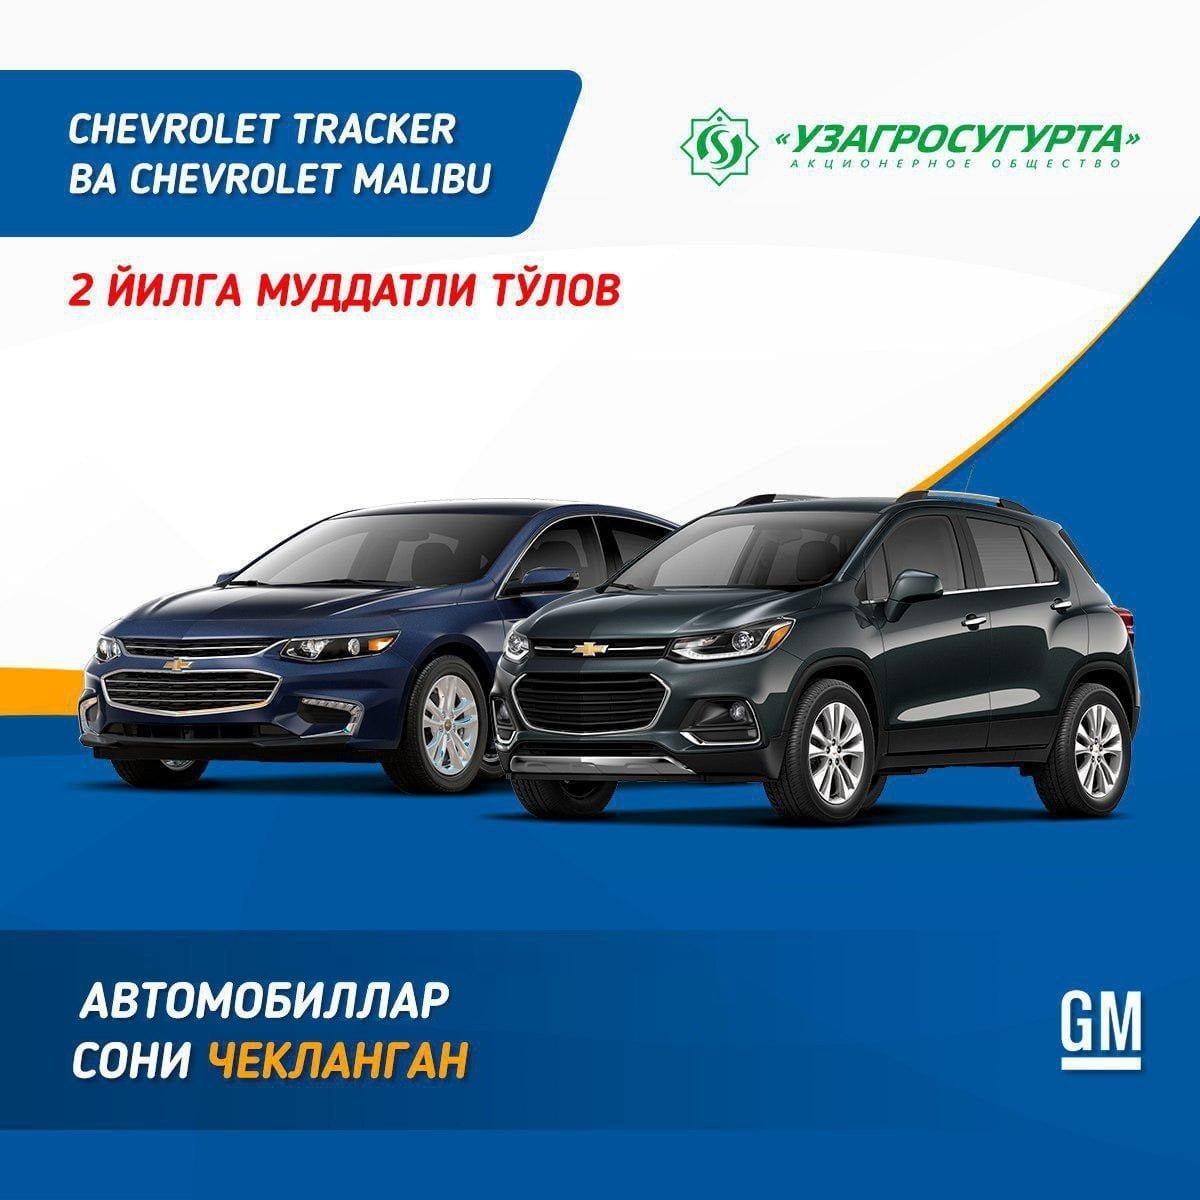 GM Uzbekistan предлагает купить Tracker и Malibu в рассрочку на два года